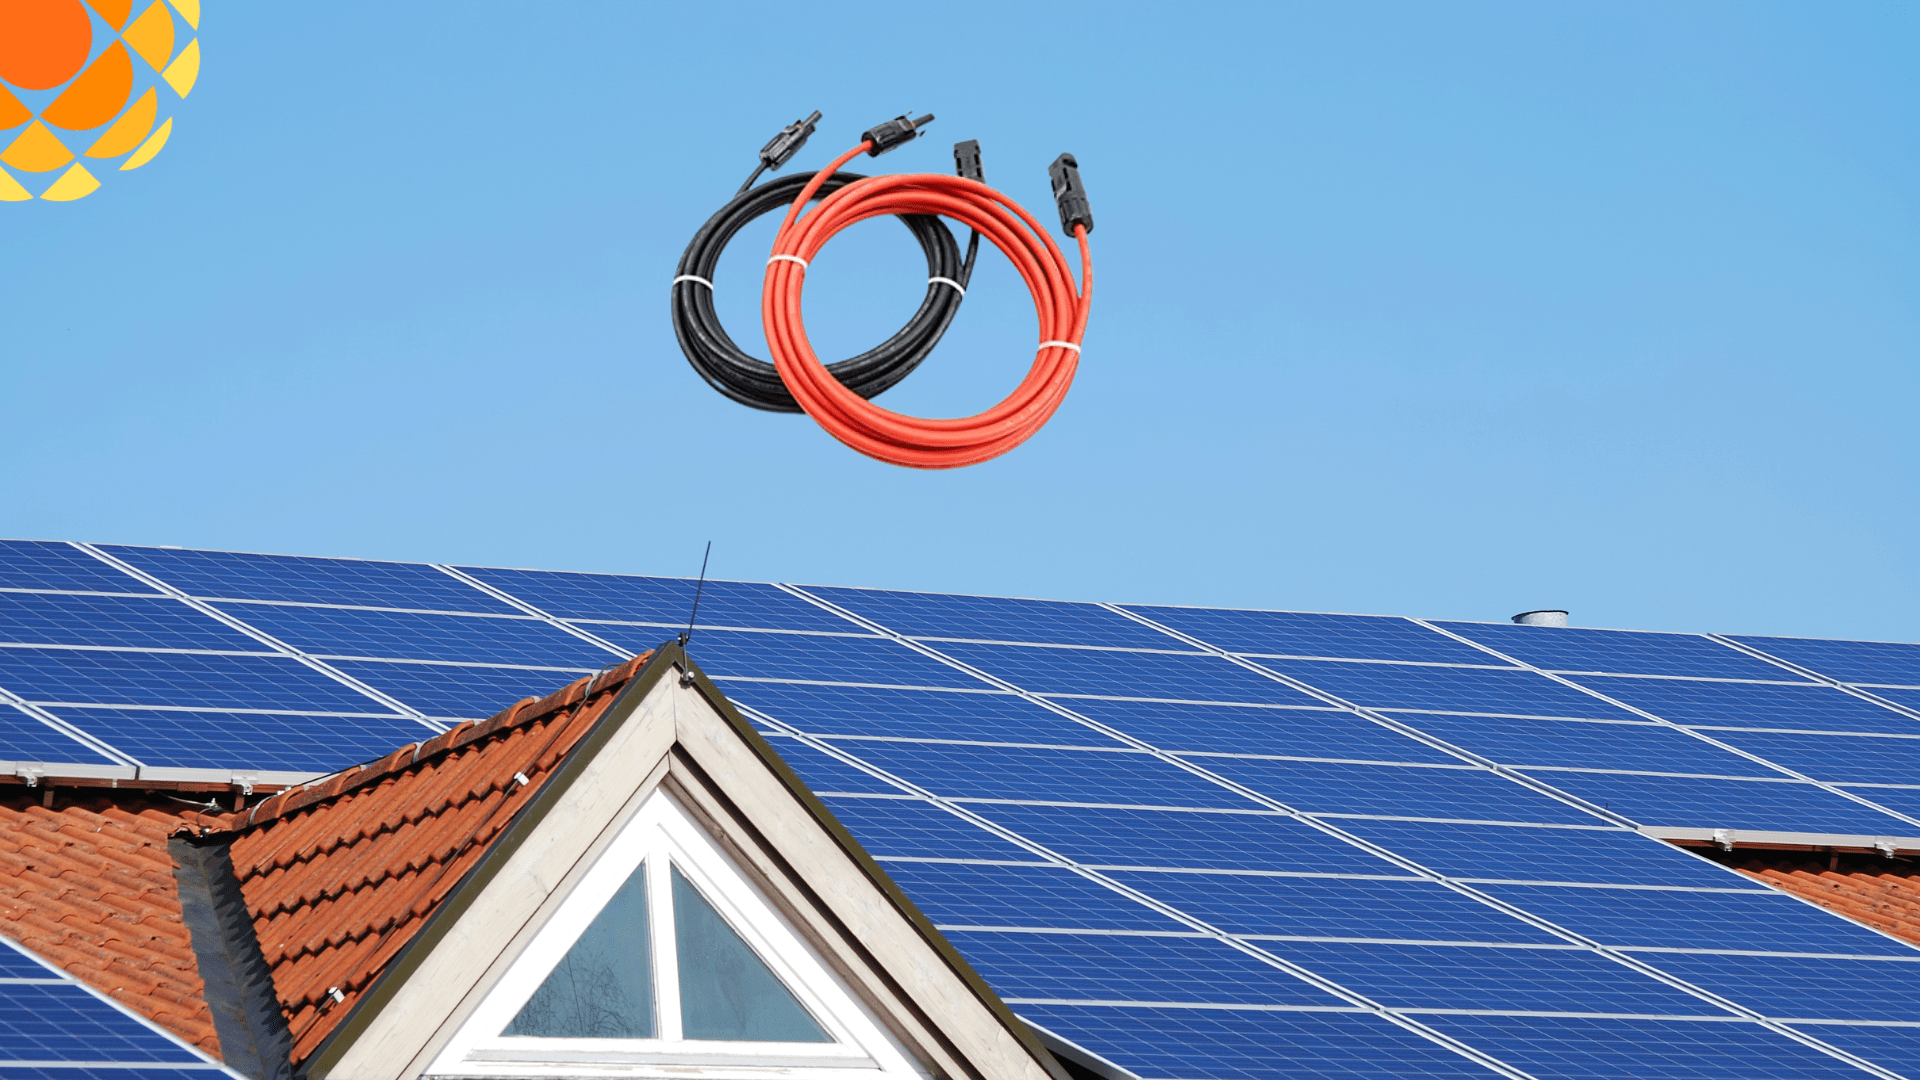 cable solar con apnel solar en techo de casa